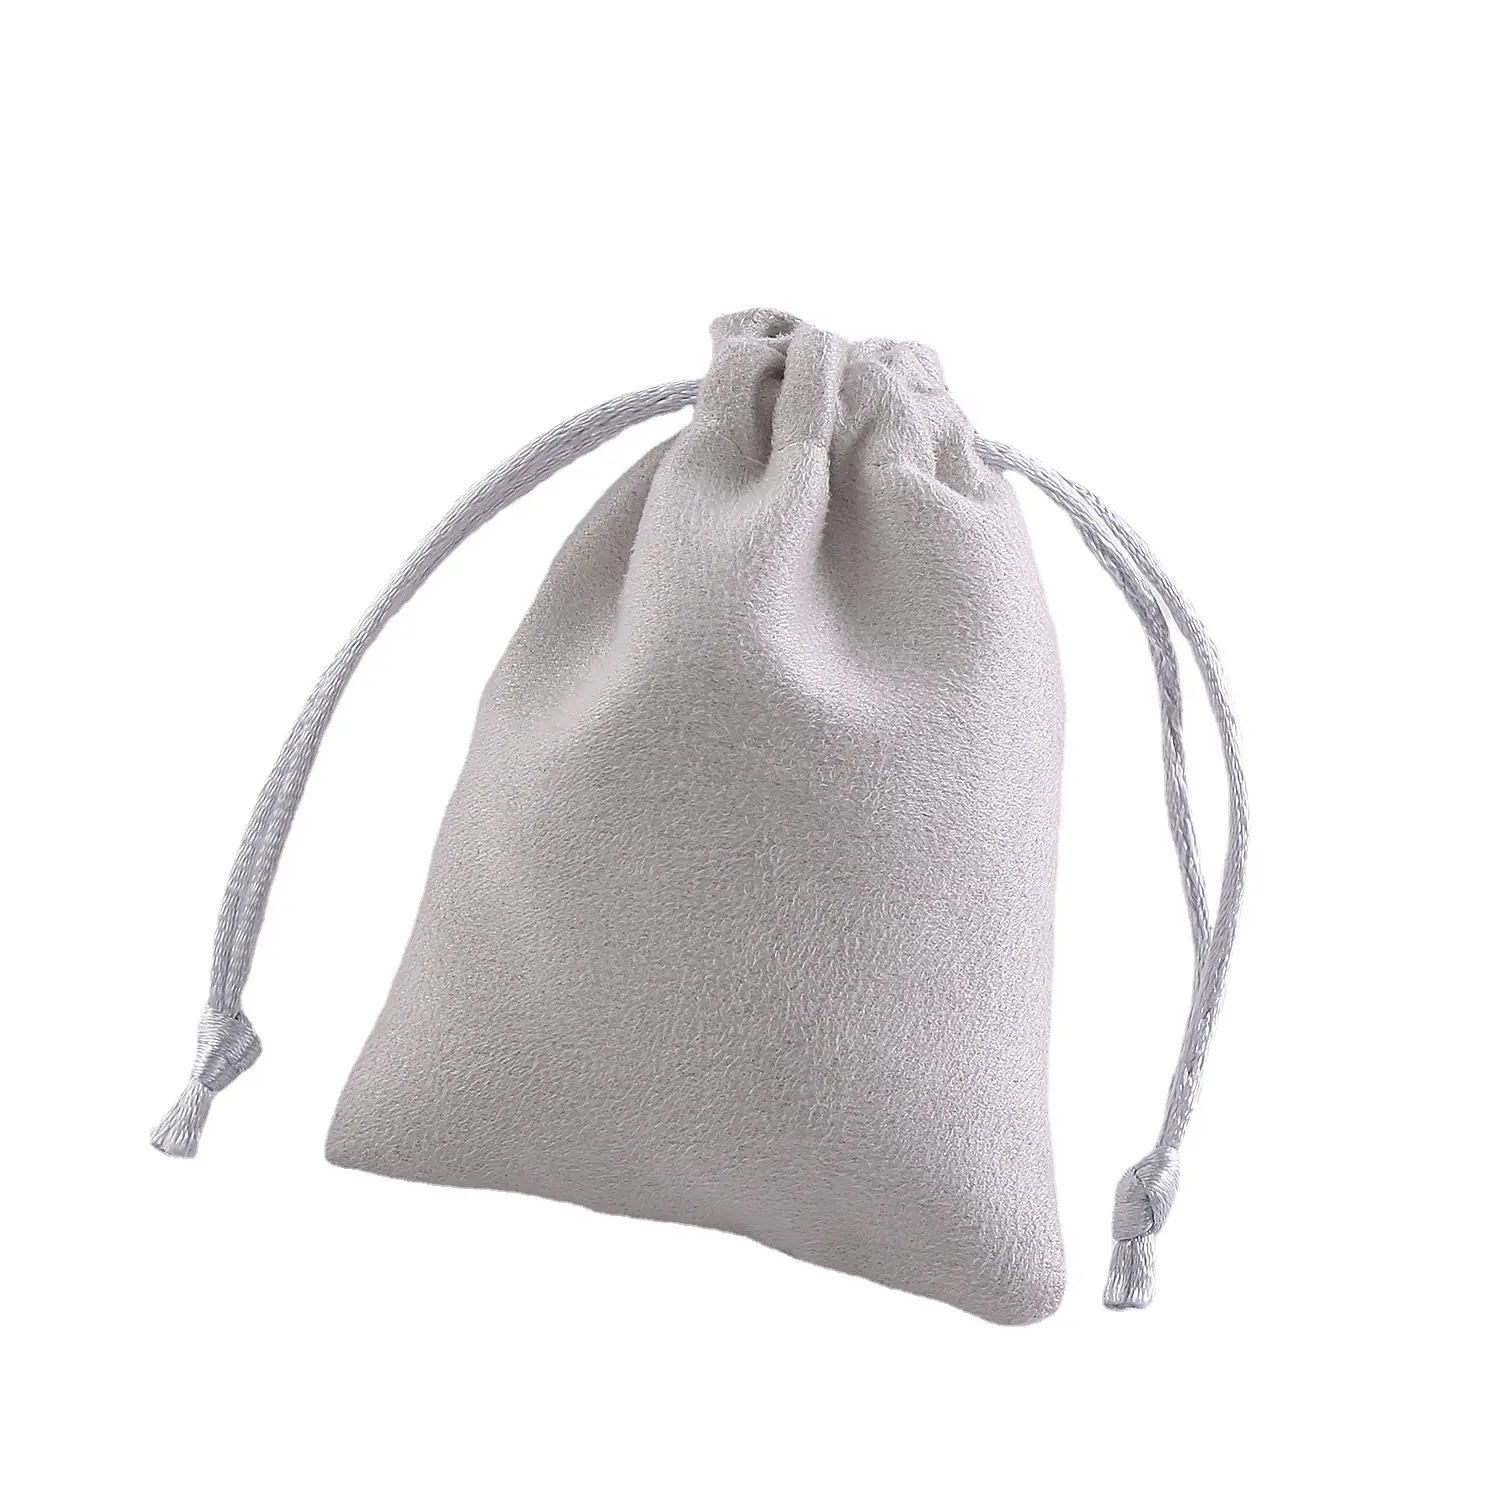 Commercio all'ingrosso di cotone velluto camoscio in microfibra di elettronica di consumo gioielli regalo con coulisse borsa personalizzata